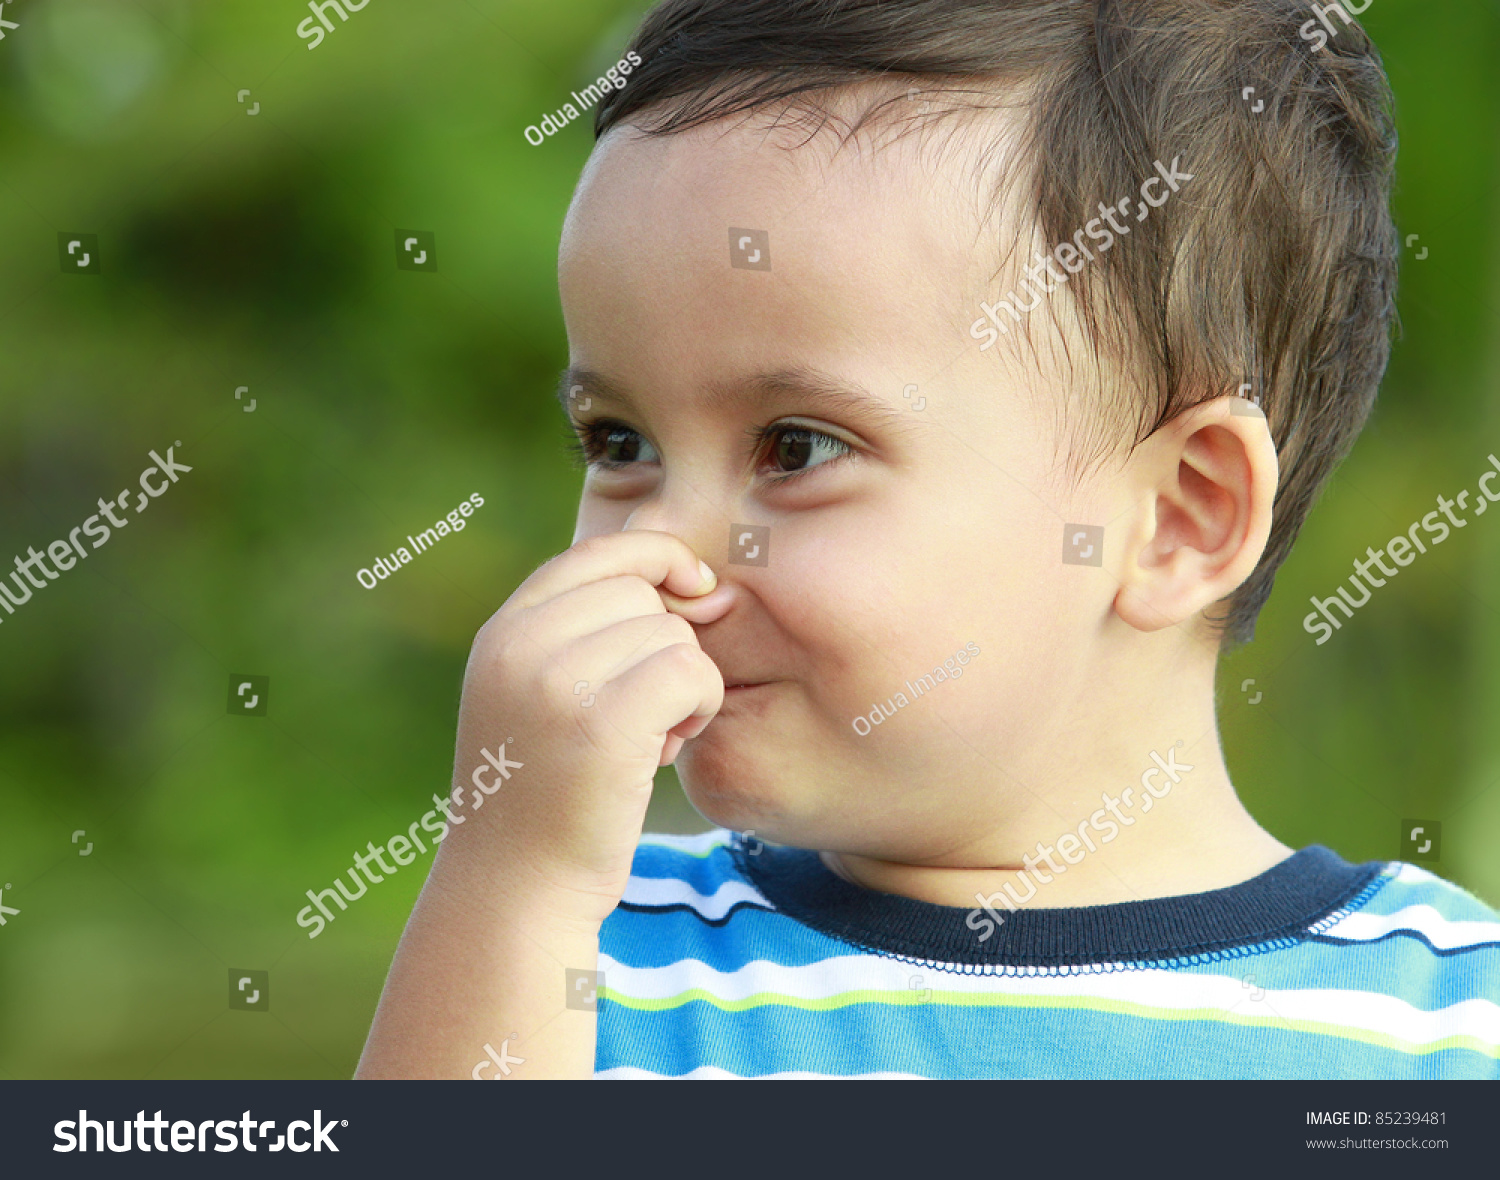 Κύπρος 2018 (επέλεξε τραγούδι) - Σελίδα 11 Stock-photo-cute-little-boy-holding-his-nose-in-green-nature-85239481